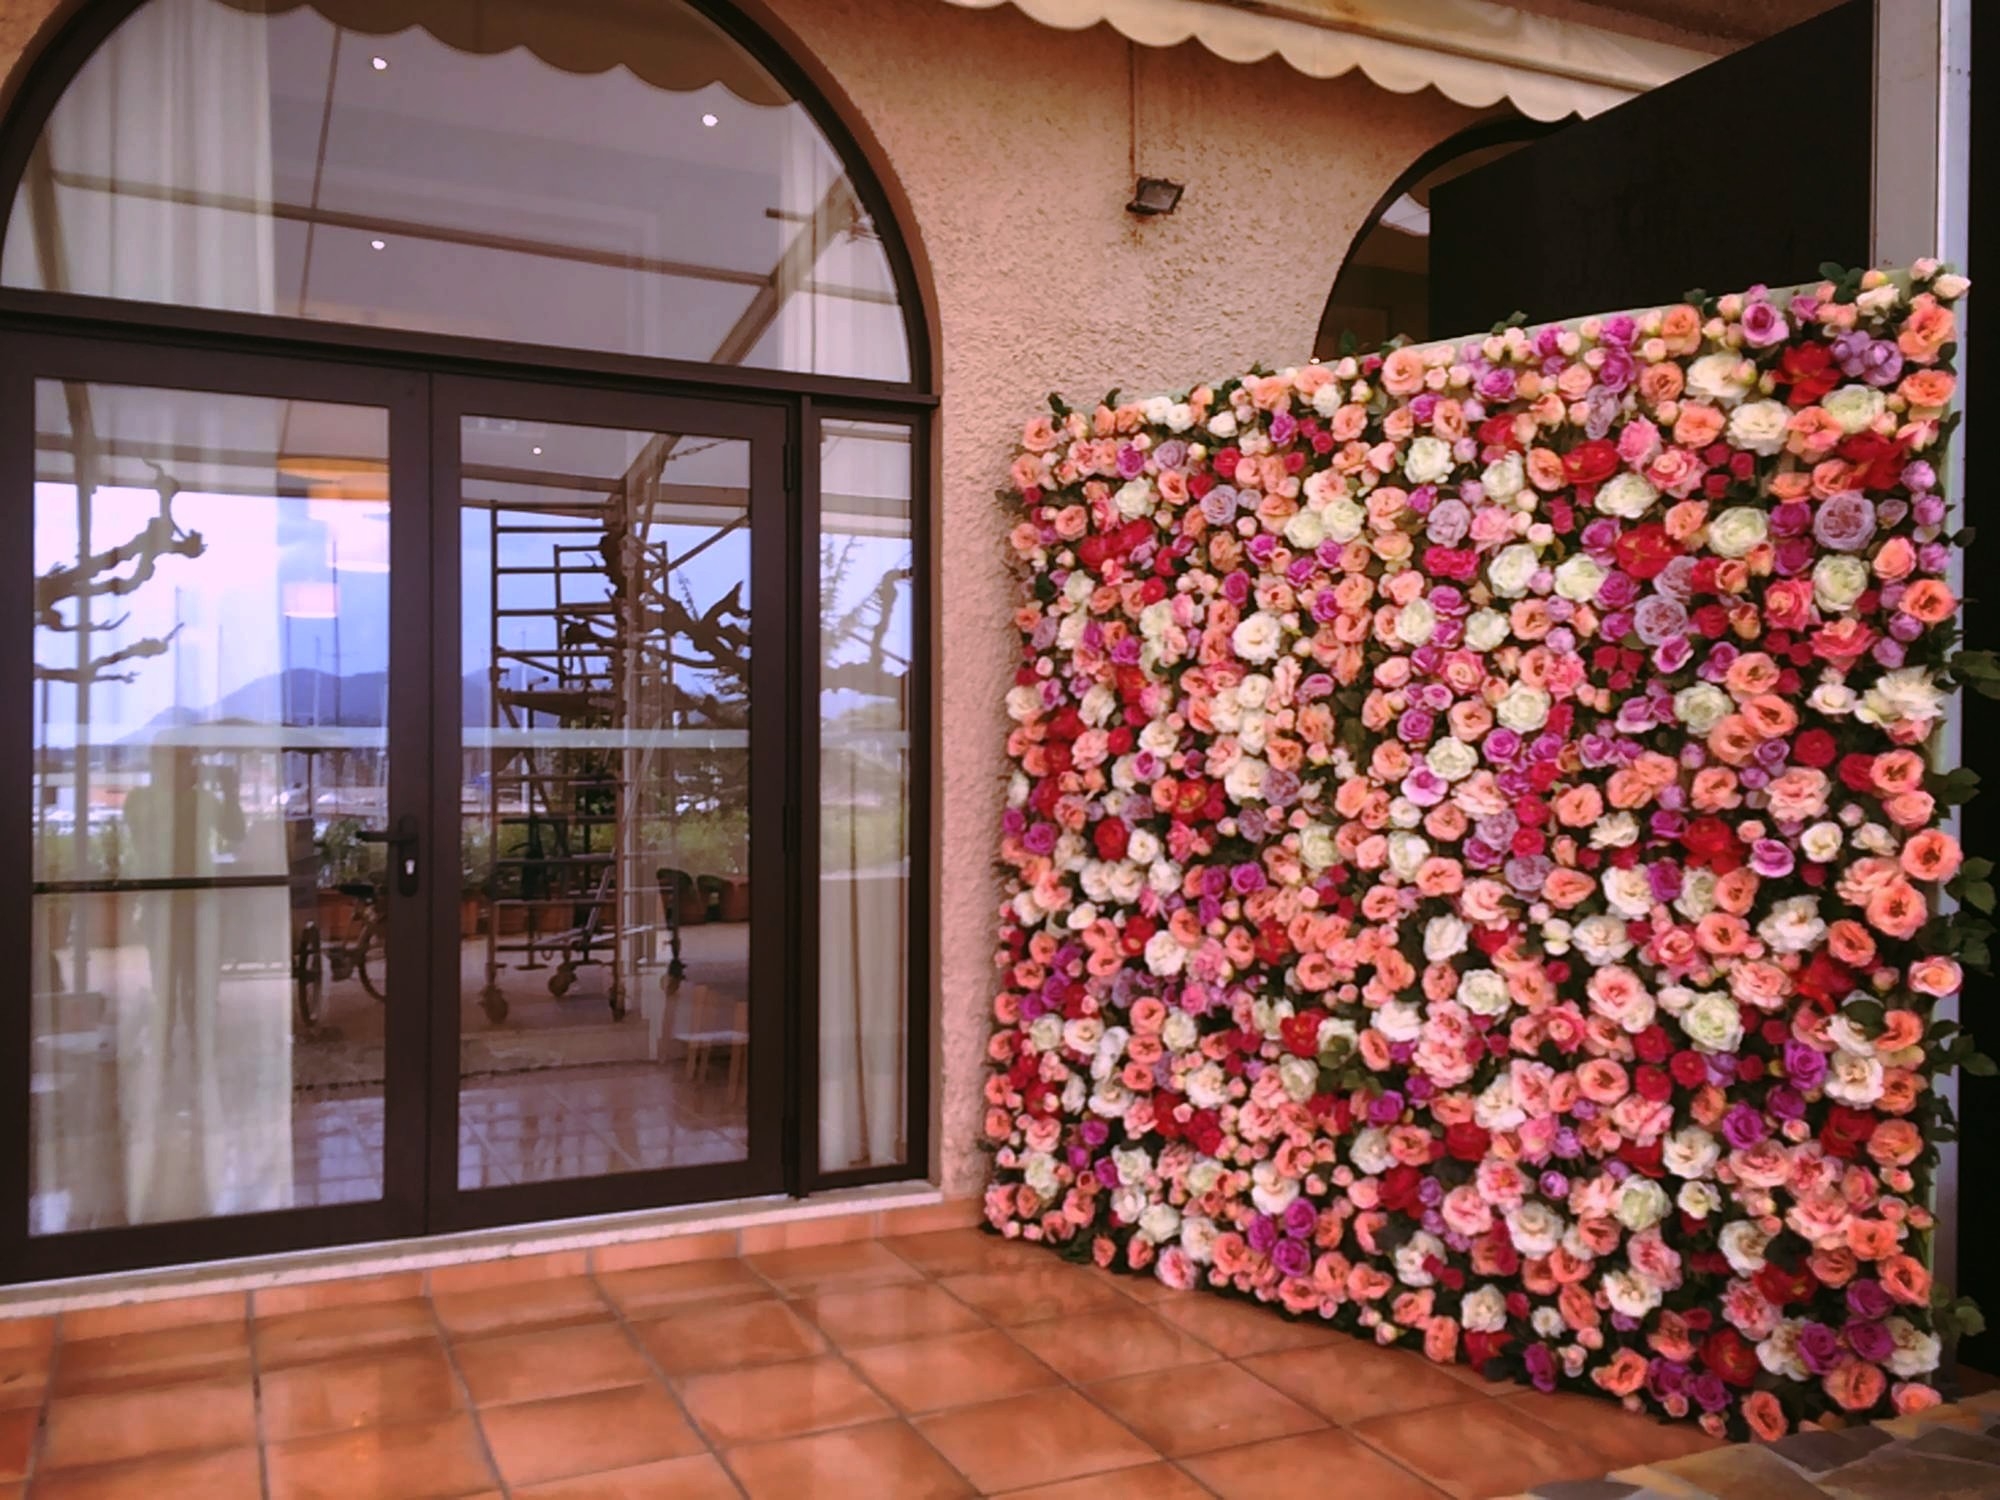 le mur de roses est un fond pour permettre de prendre les personnes en photos.